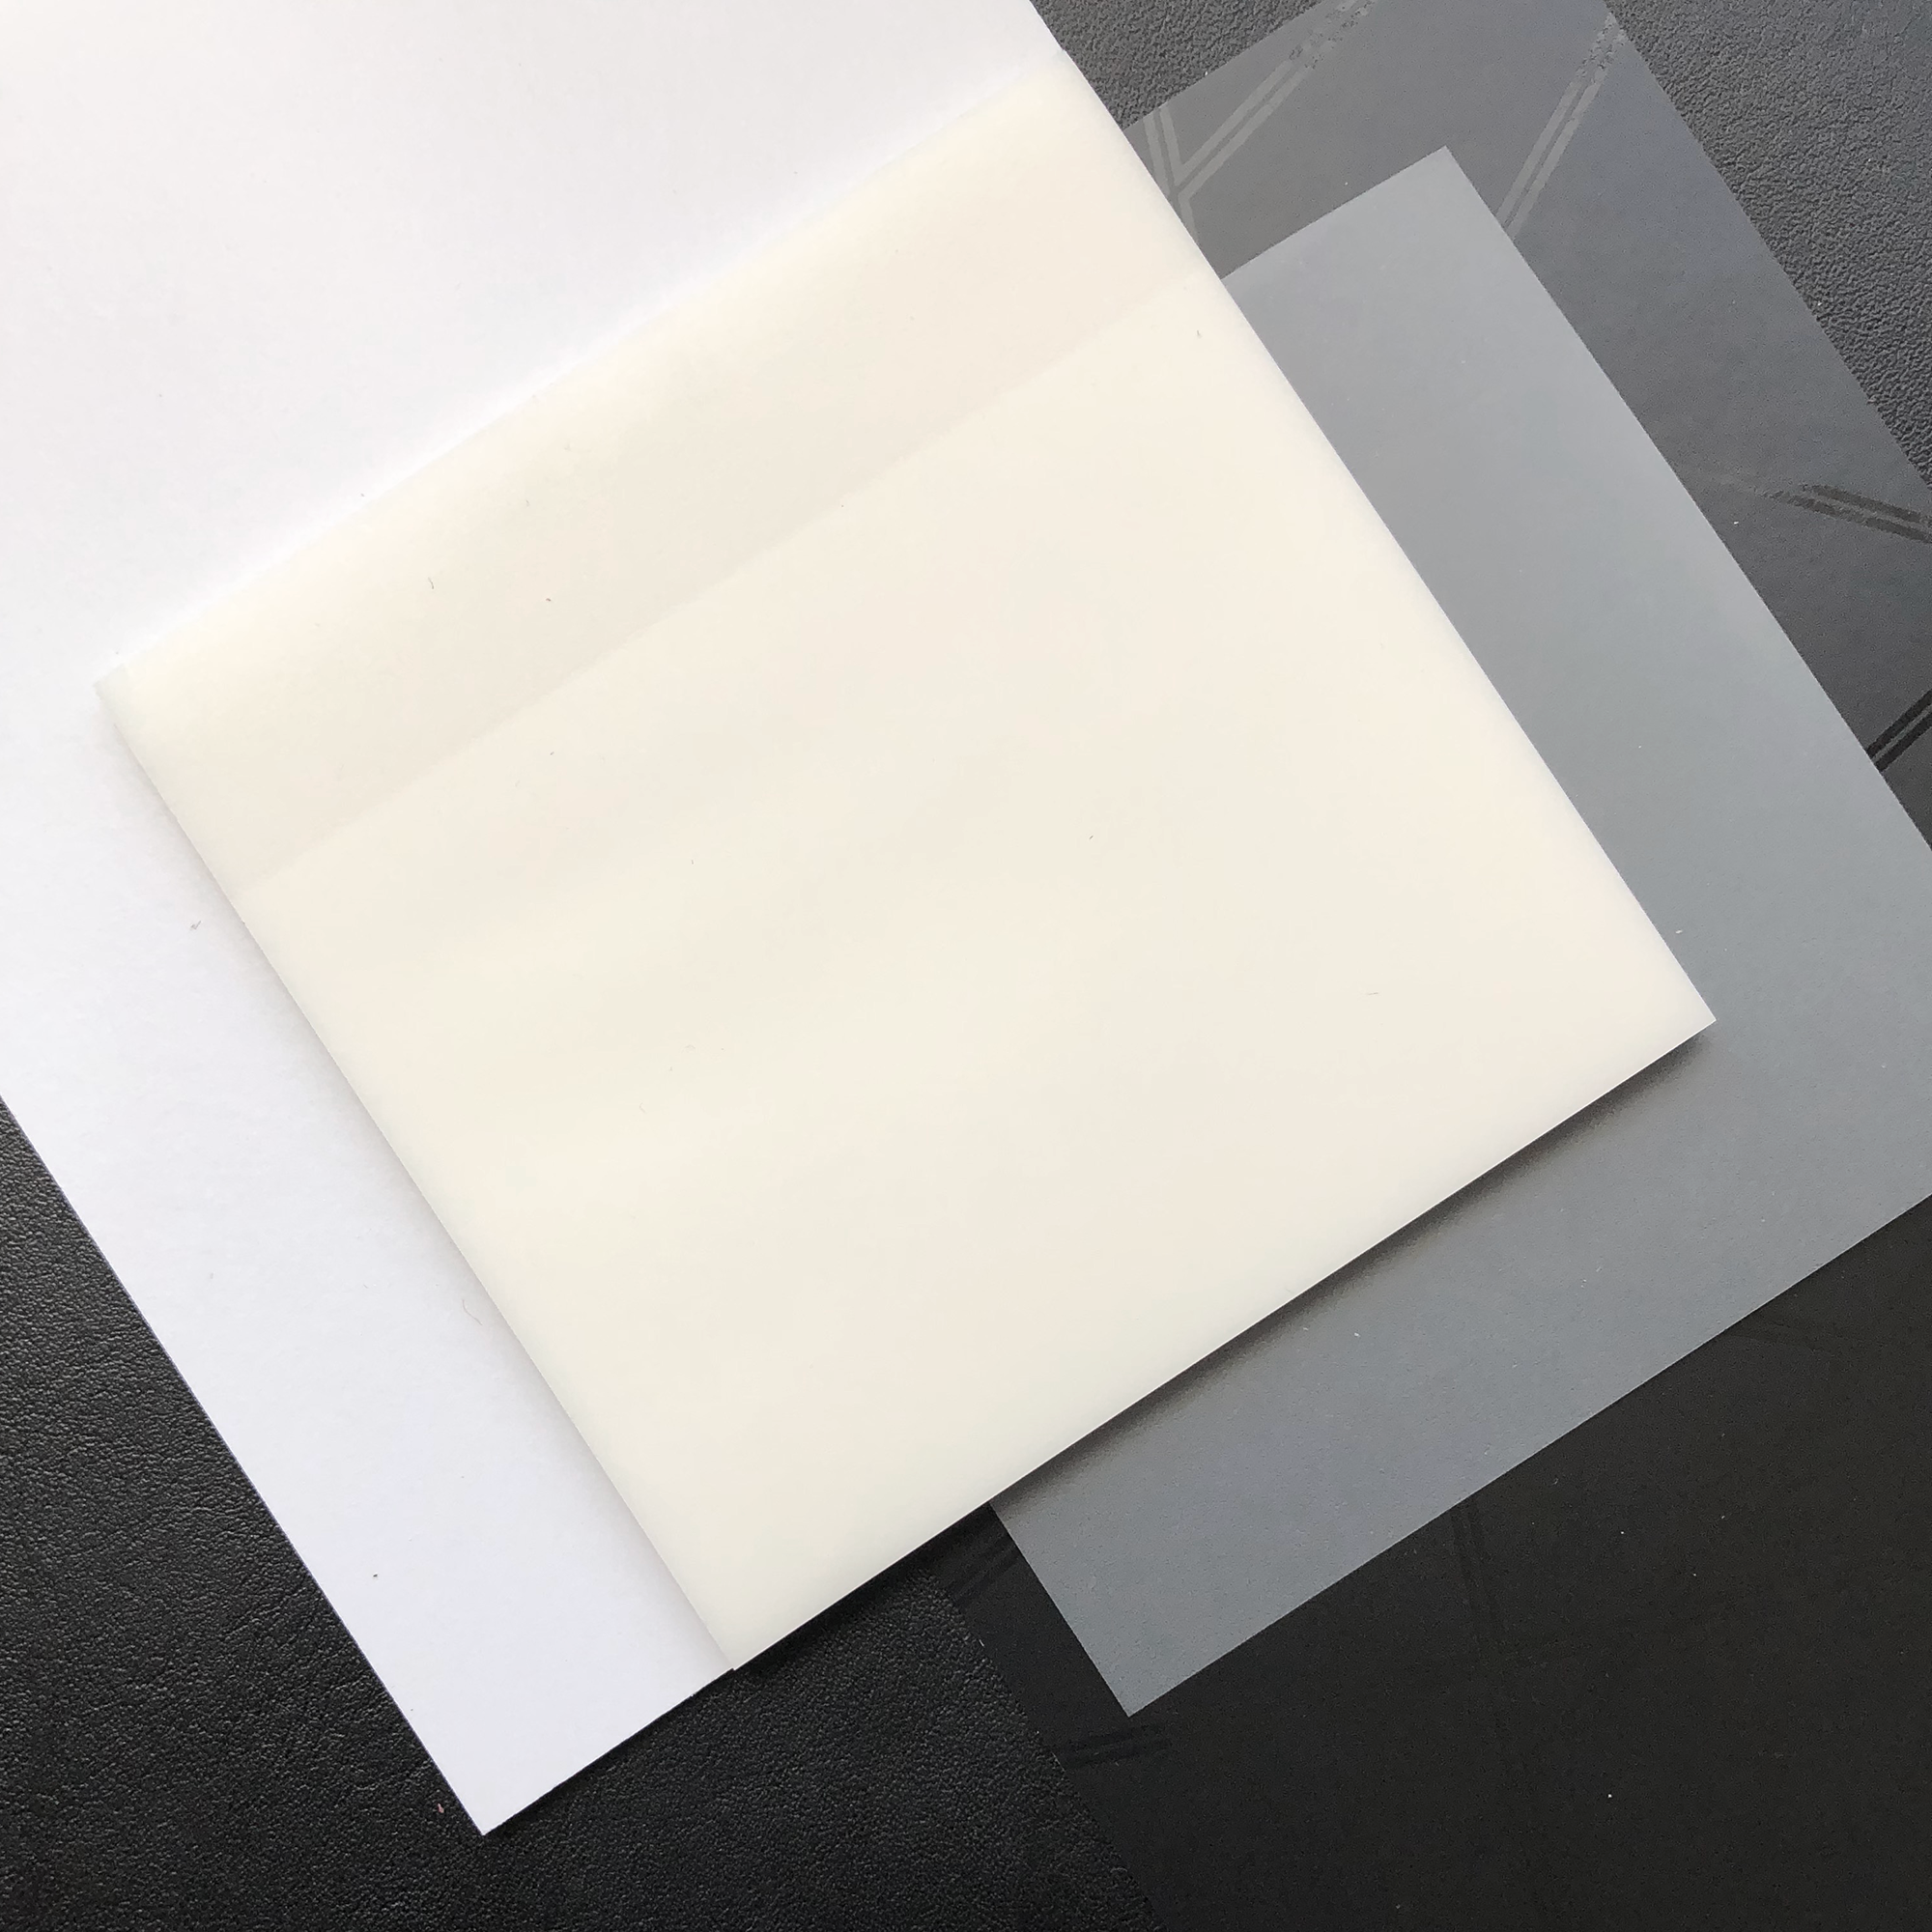 Translucent Sticky Notes - 3x3